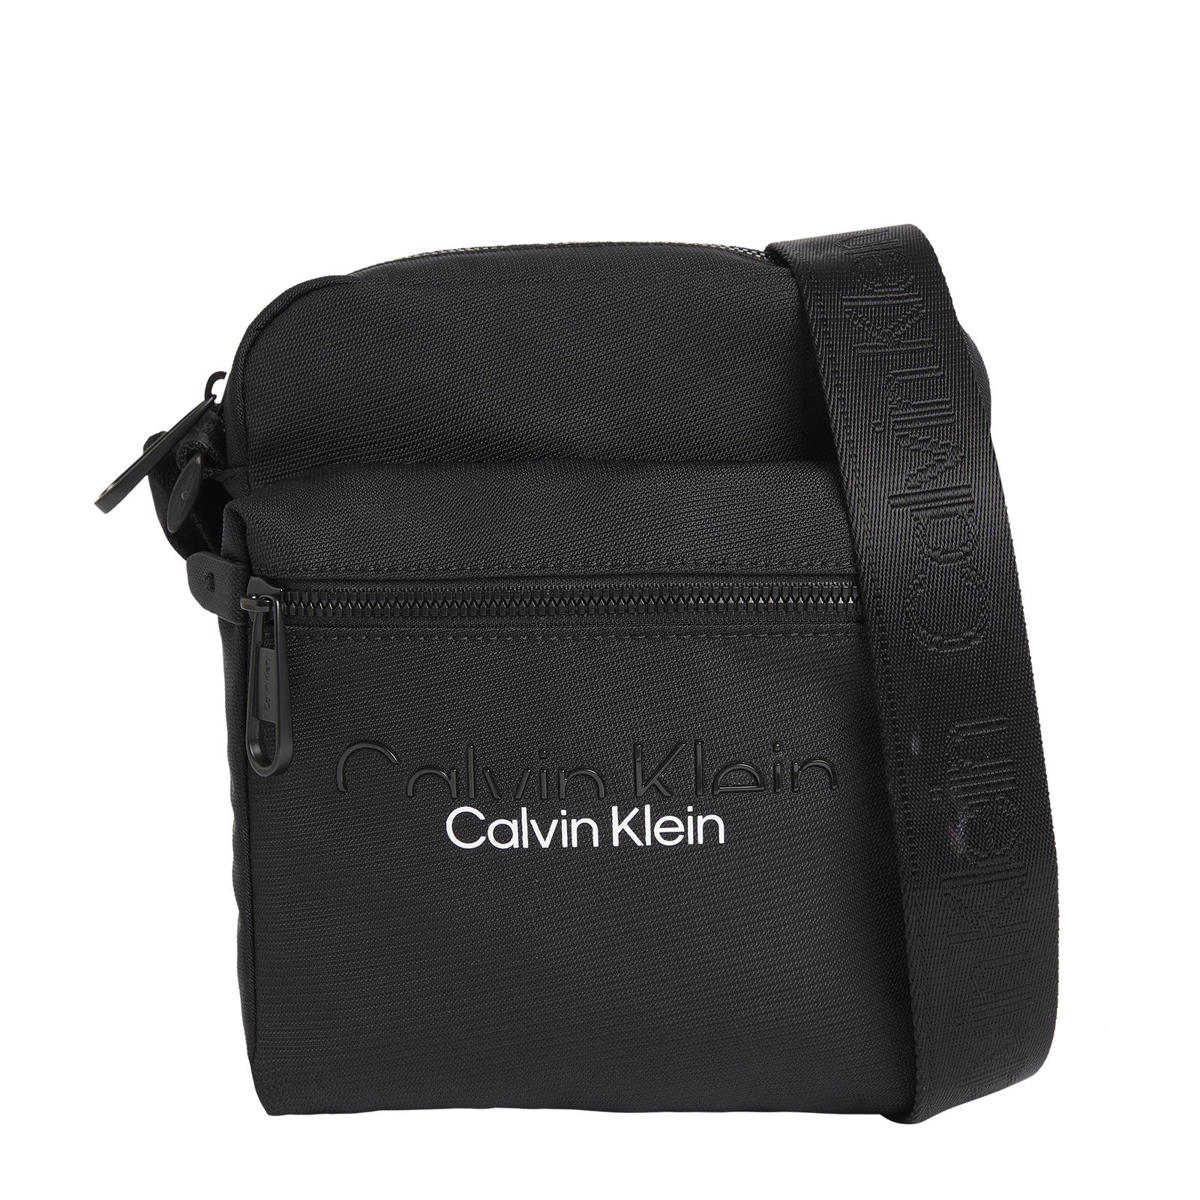 Verhoog jezelf Ezel maagd Calvin Klein schoudertas met logo zwart | wehkamp